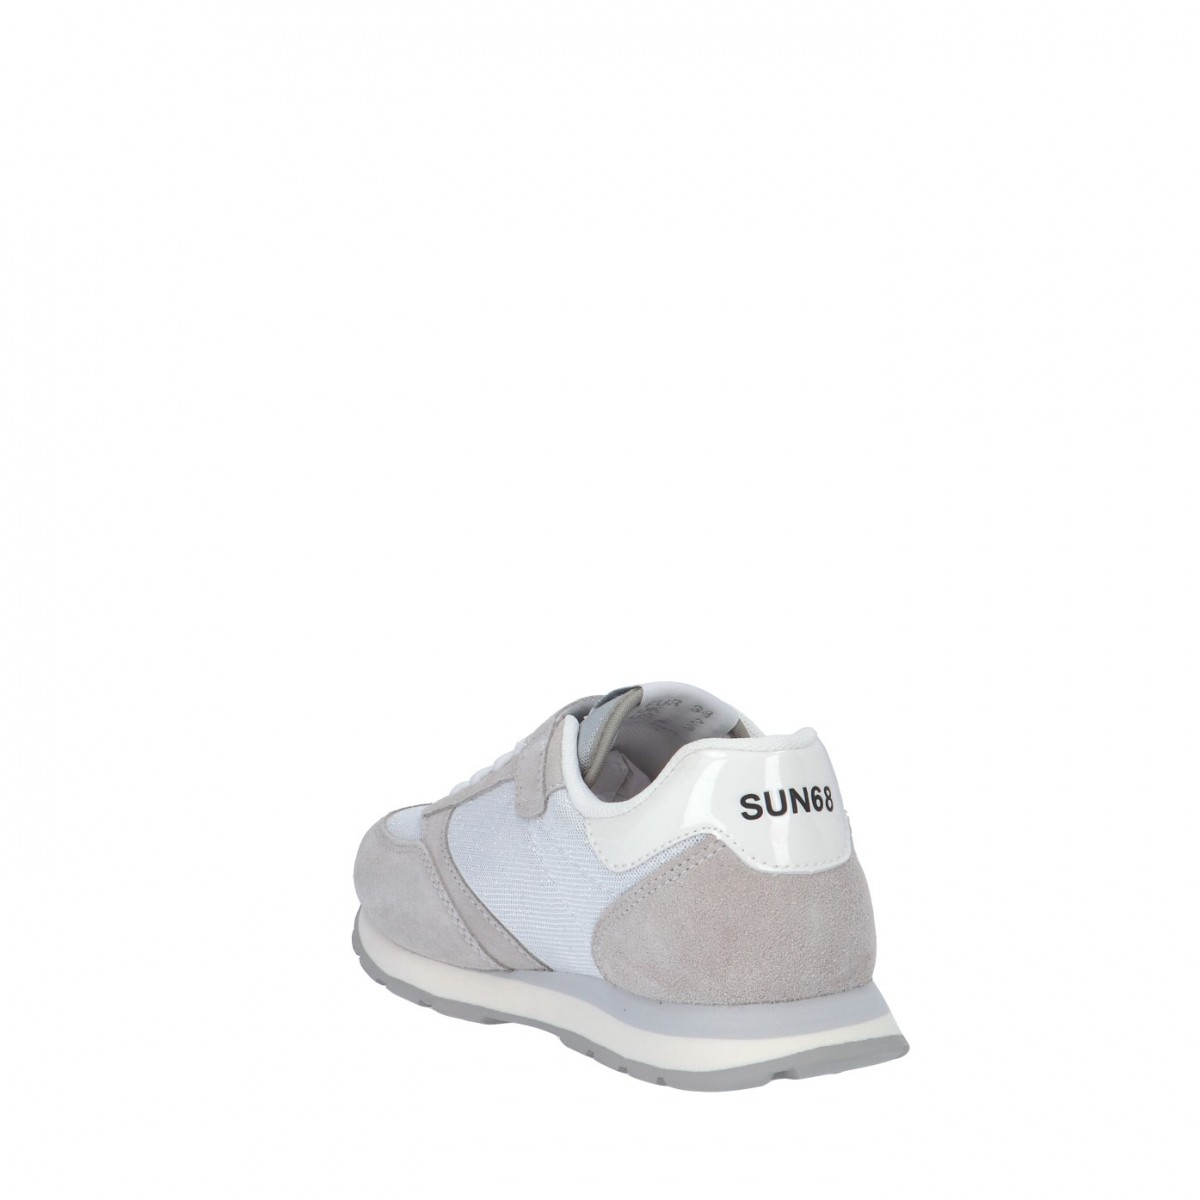 Sun68 Sneaker Bianco Gomma Z32403